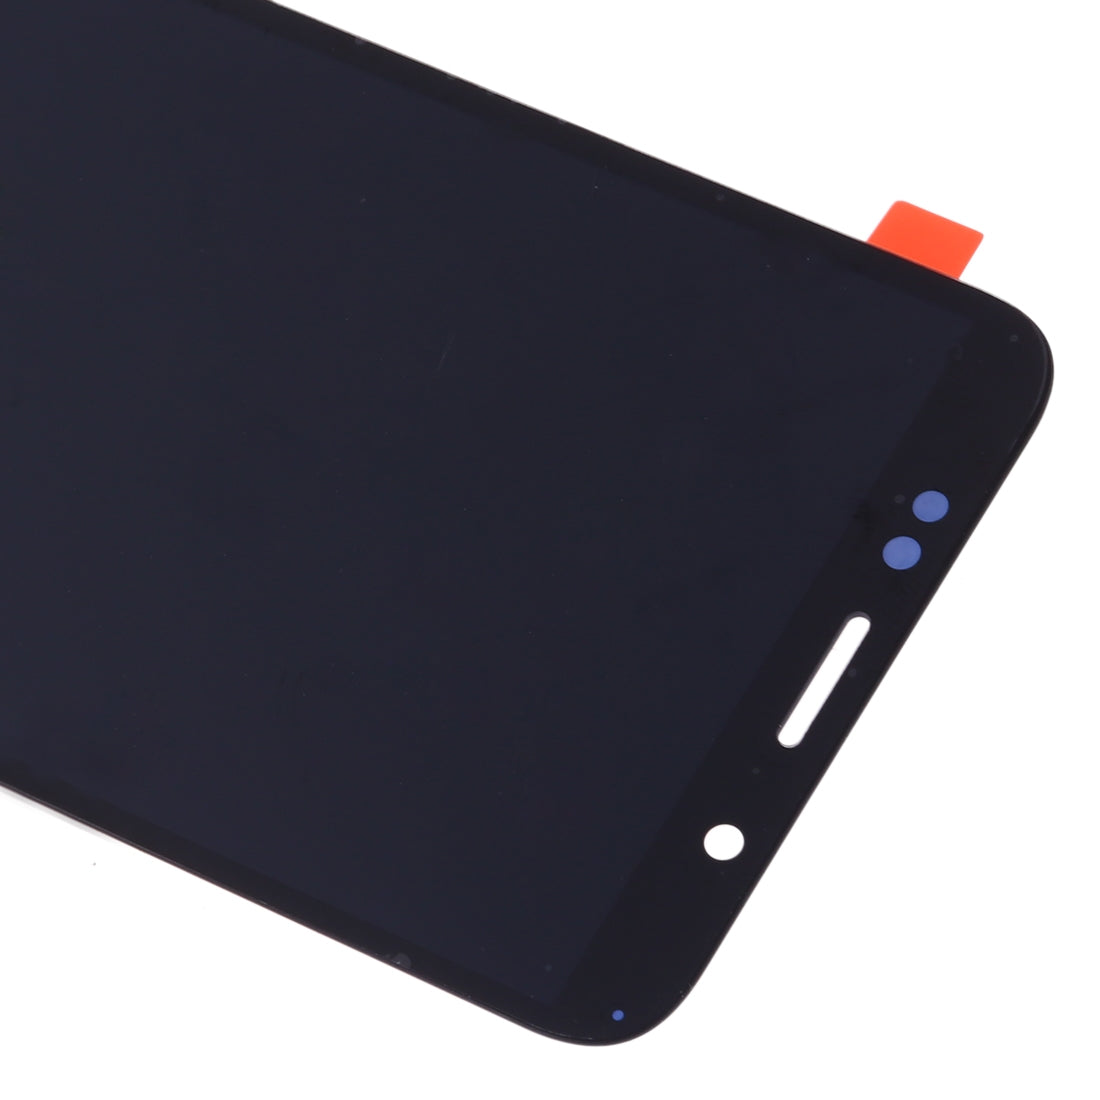 Pantalla LCD + Tactil Digitalizador Huawei Y5 Prime (2018) Negro